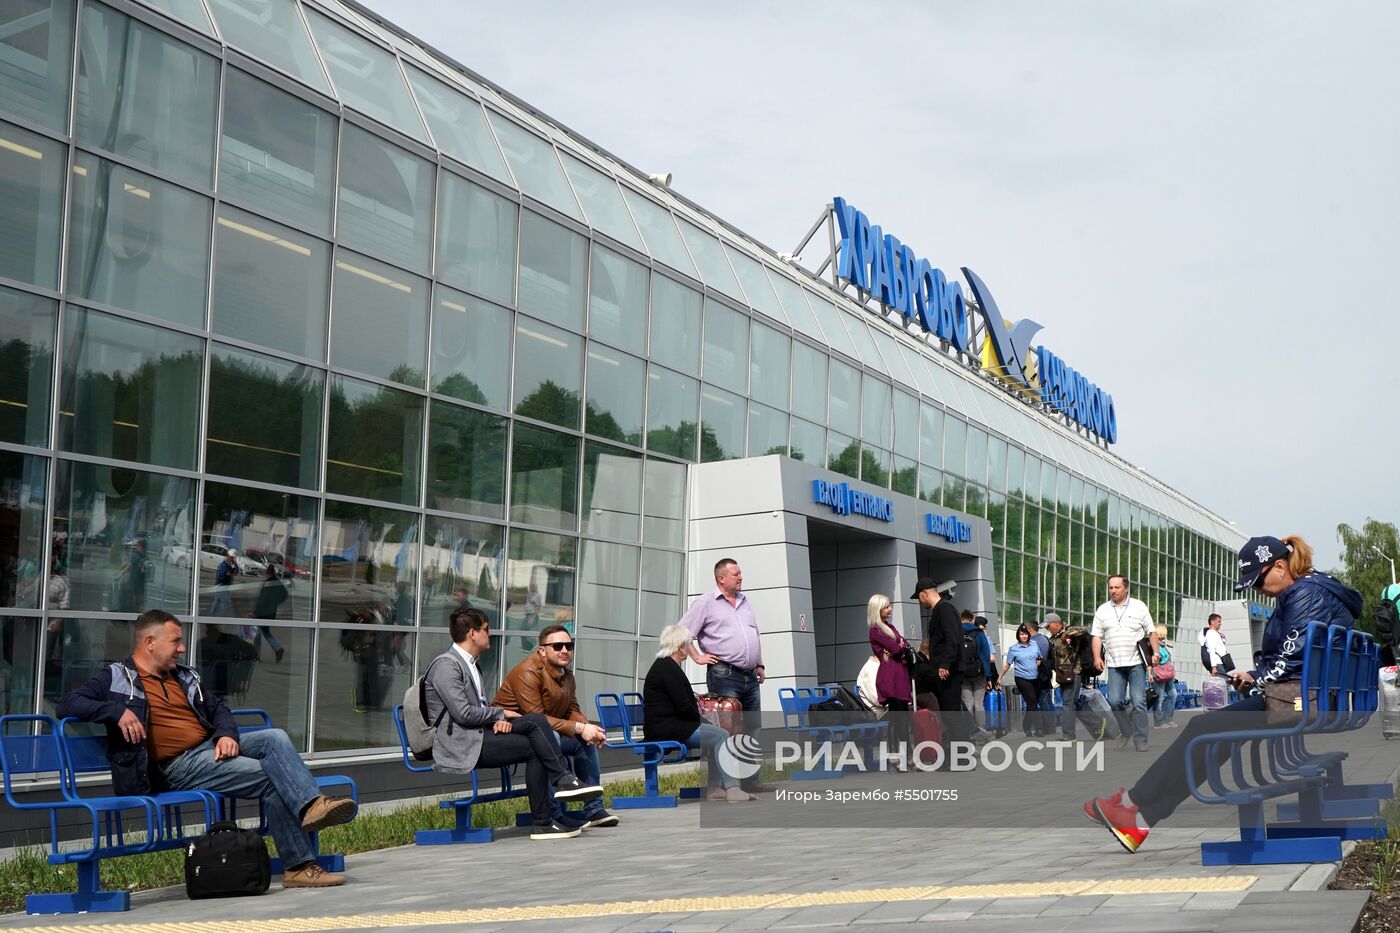 Новый аэровокзальный комплекс международного аэропорта Храброво